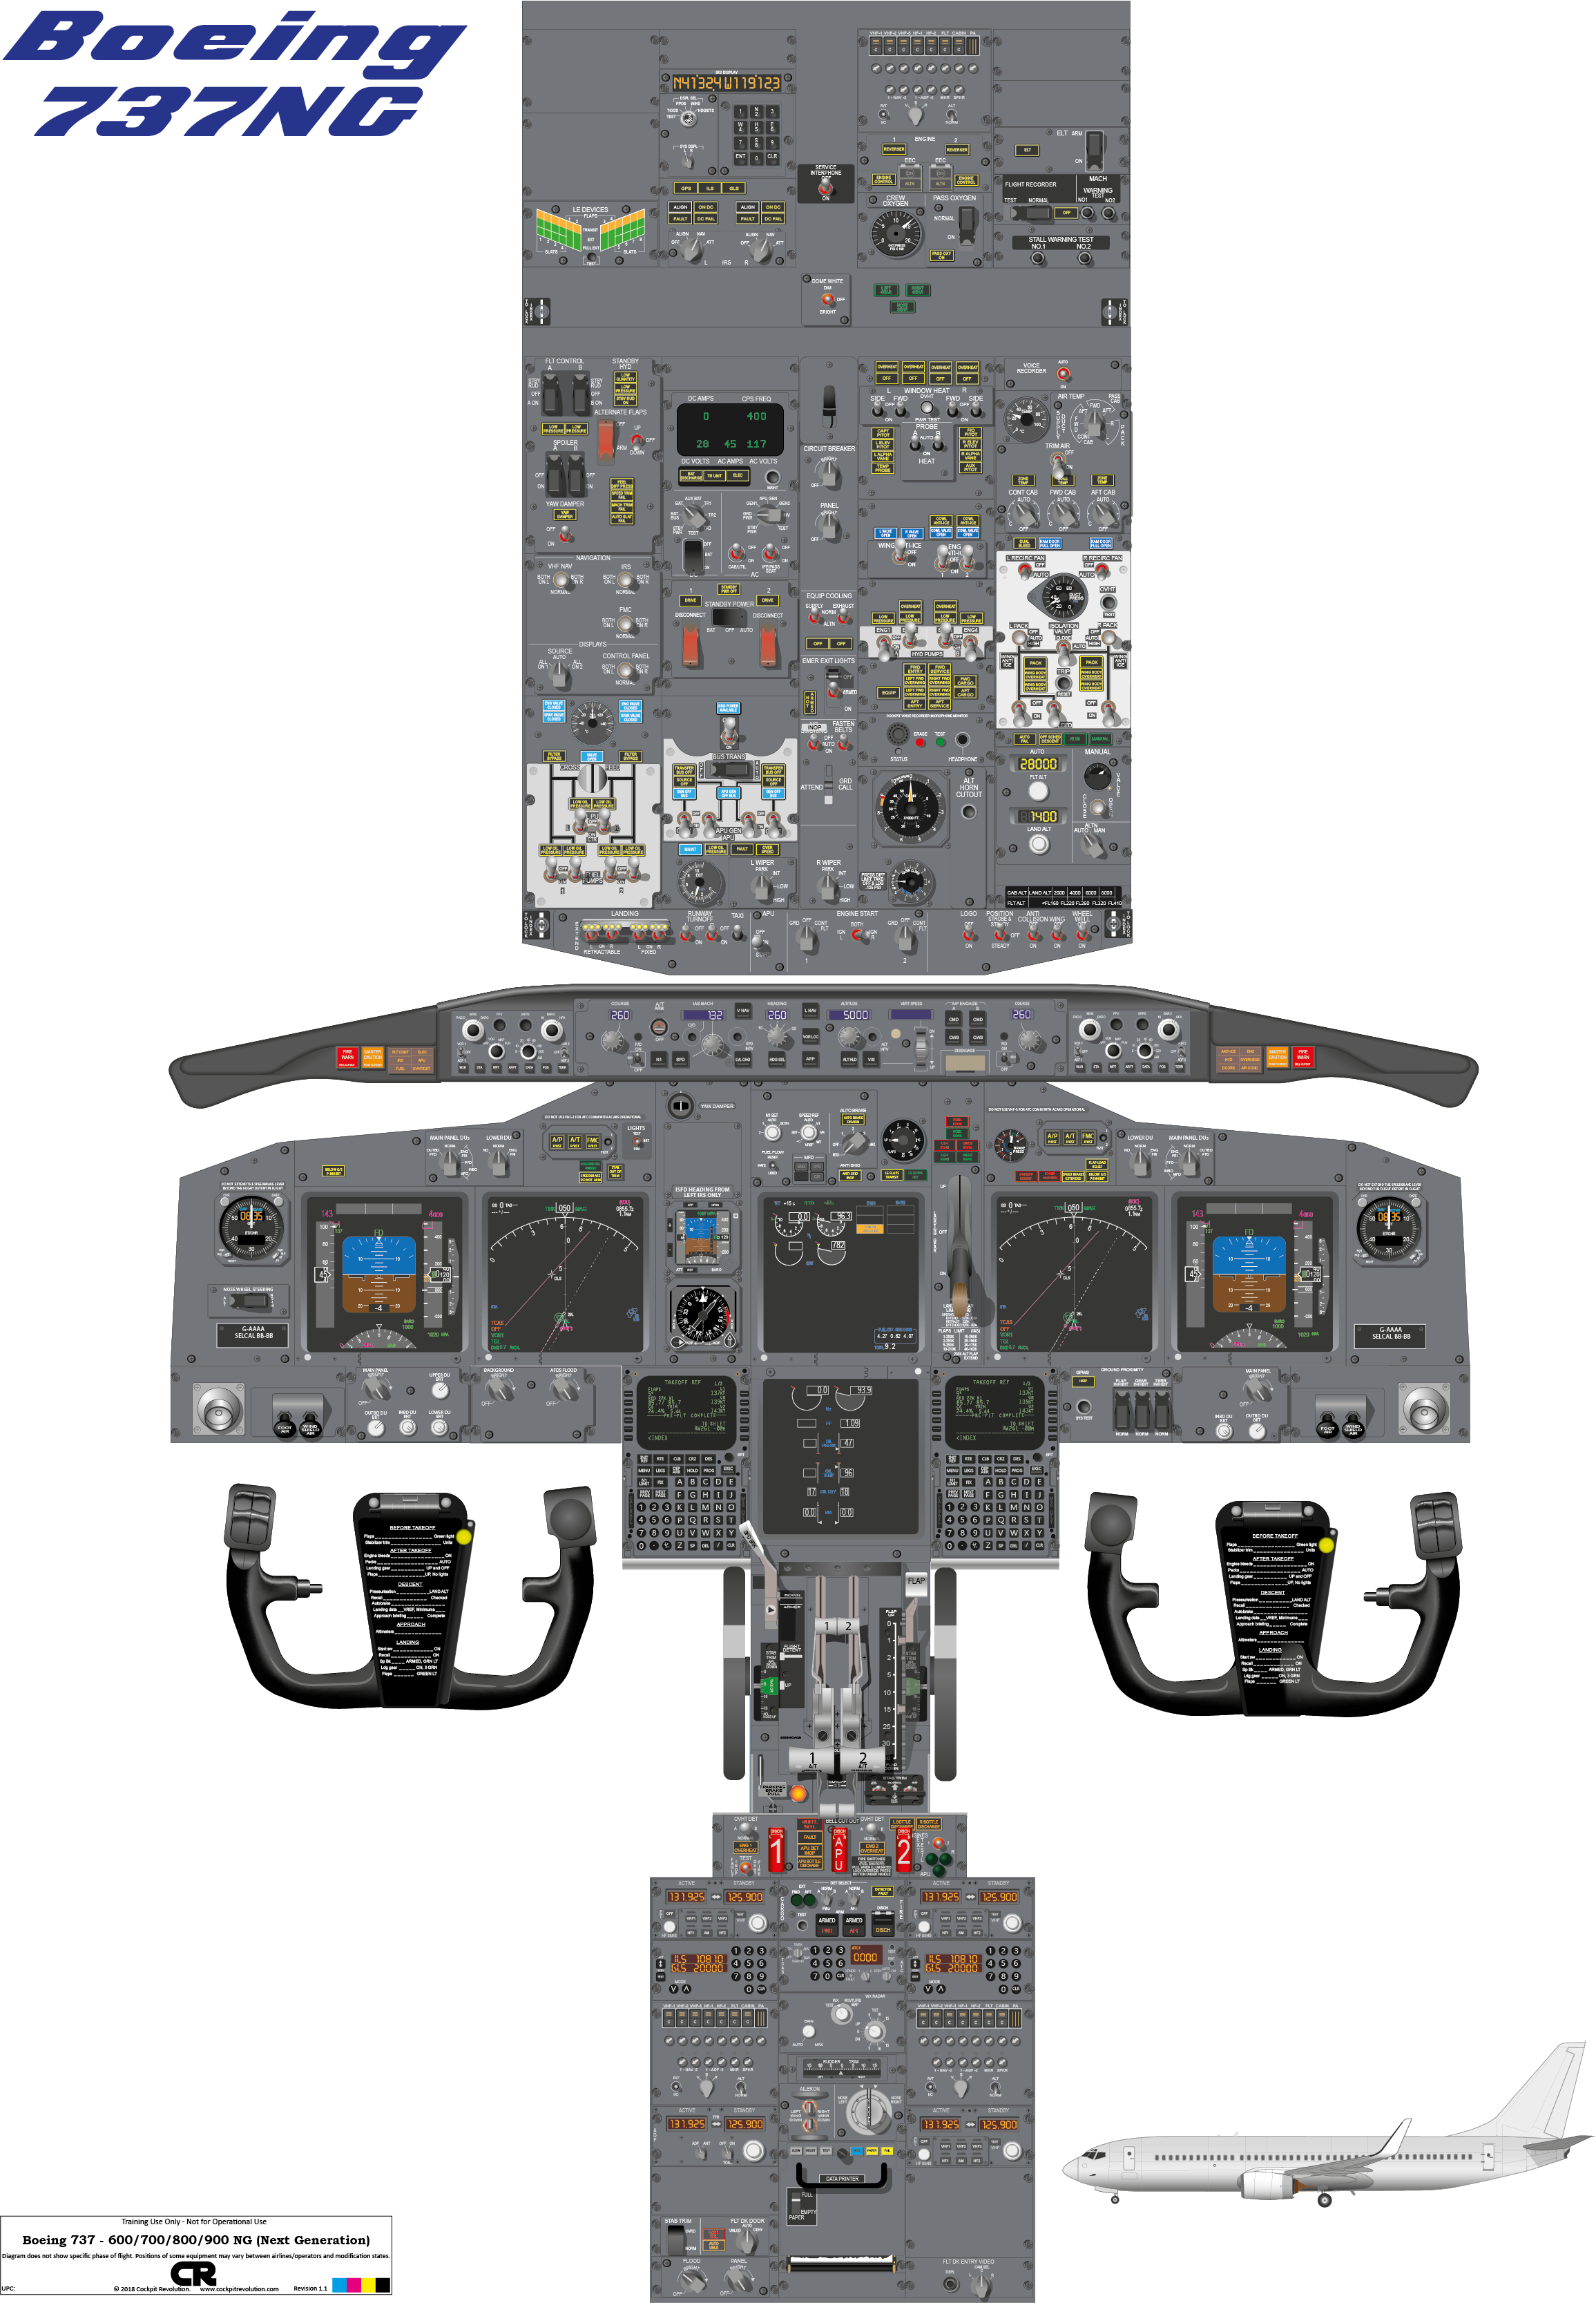 clipart boeing 737 cockpit